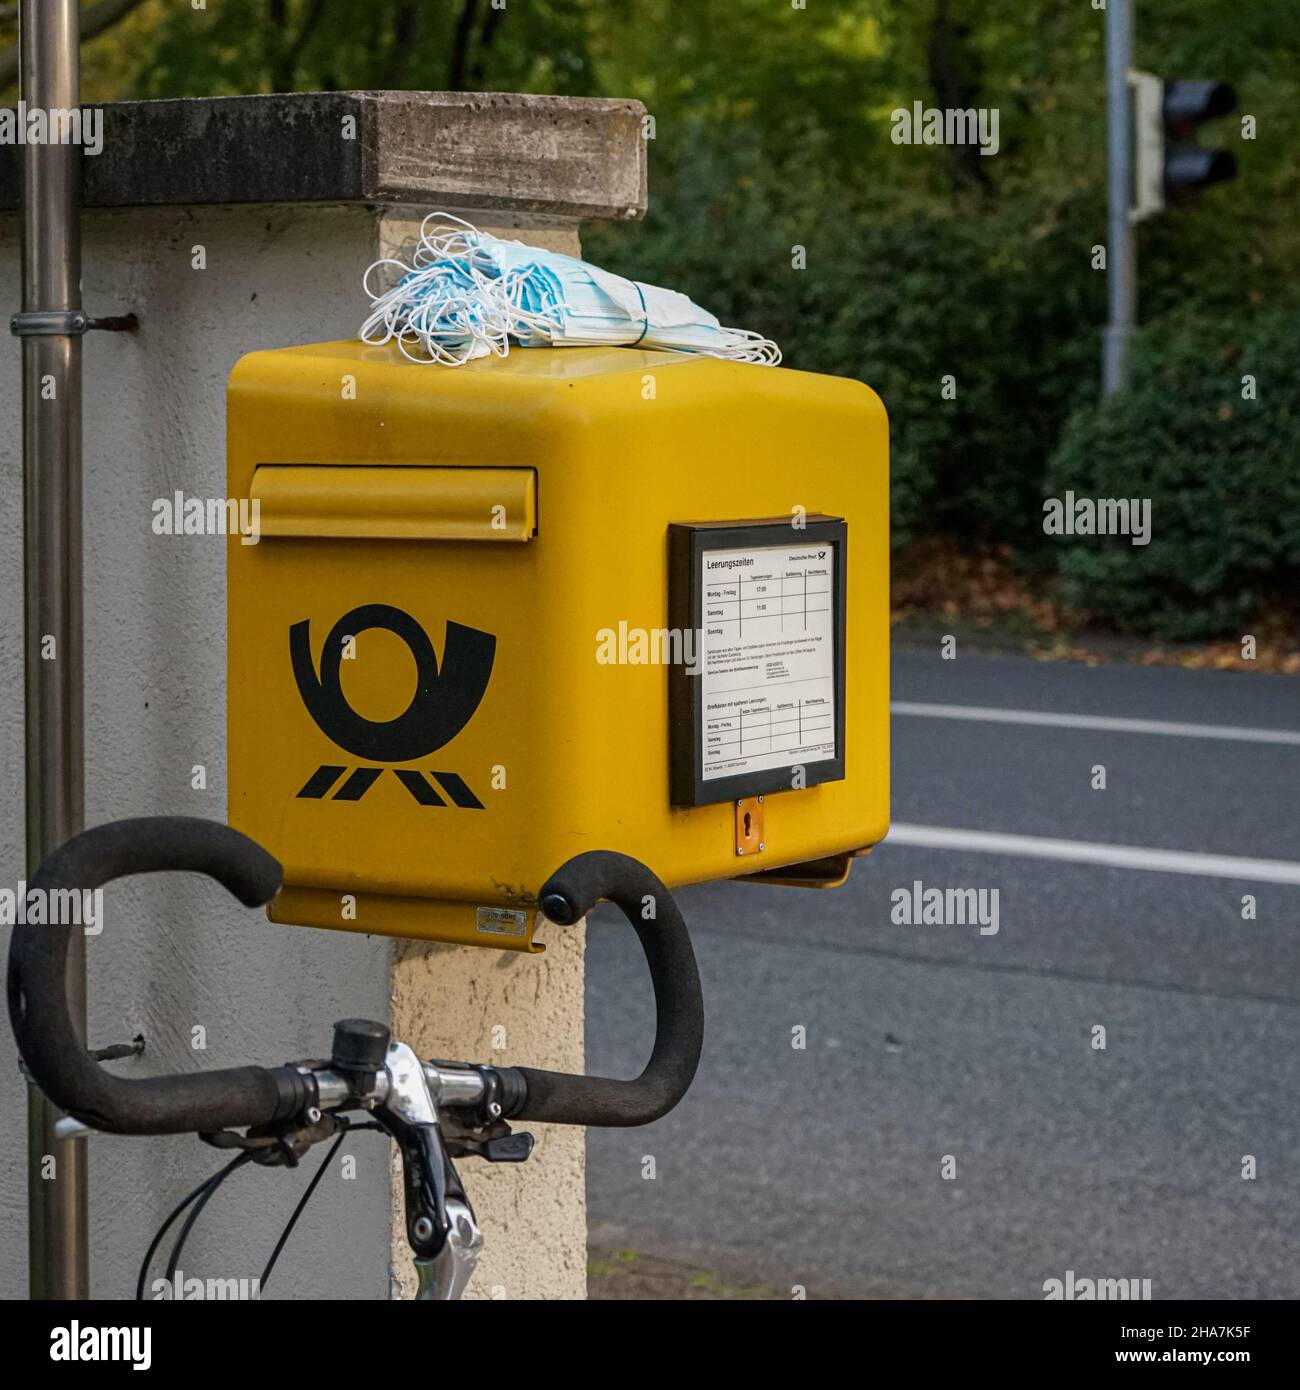 Auf einen gelben Briefkasten der Deutschen Post hat jemand einen Haufen Corona-Masken gelegt. Davor steht ein Fahrrad, der Lenker ist zu sehen. Stockfoto